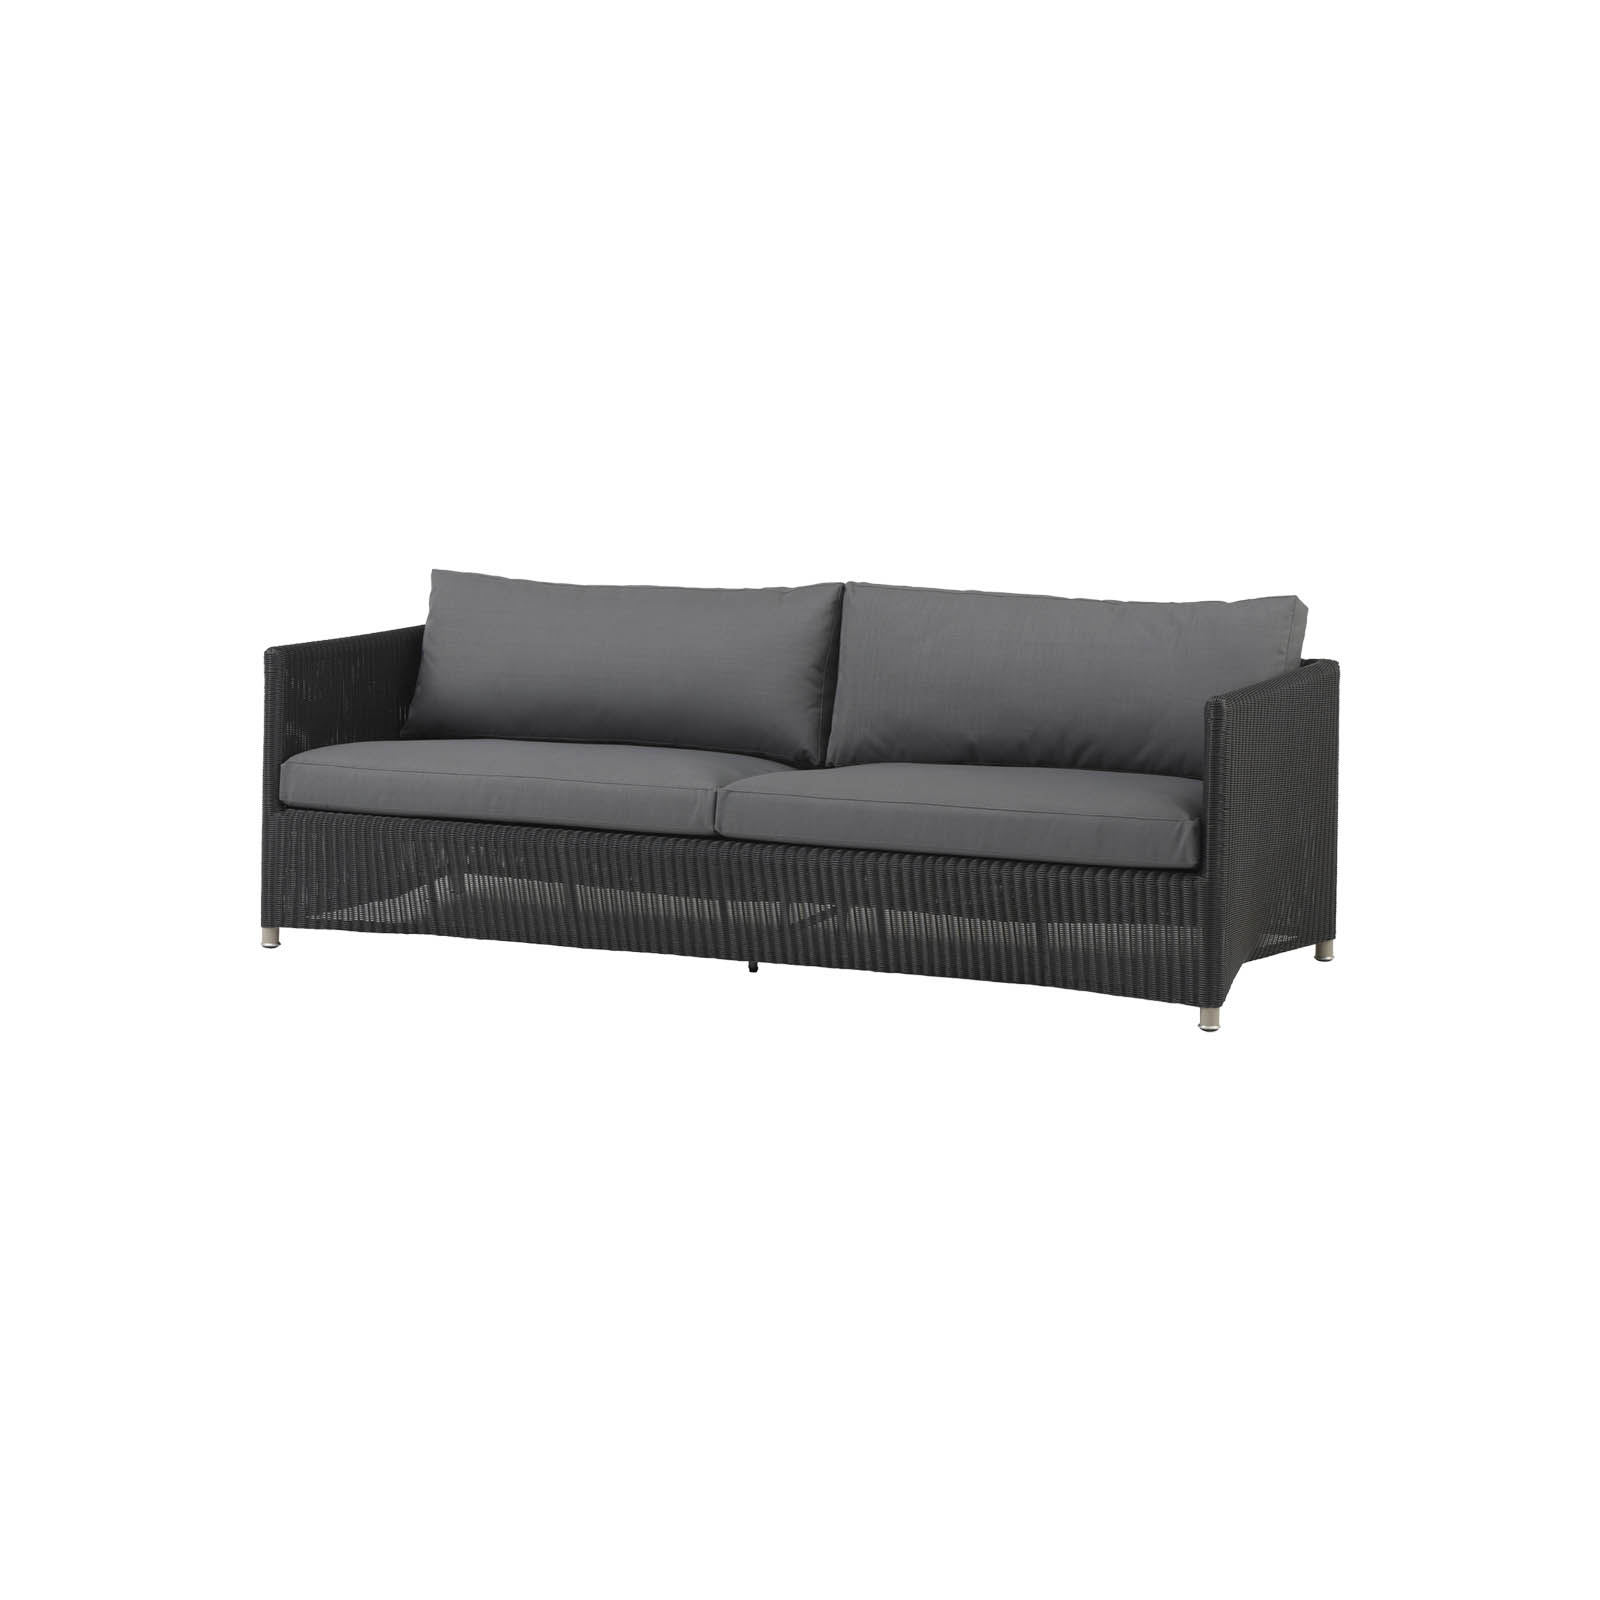 Diamond 3-Sitzer Sofa aus Cane-line Weave in Graphite mit Kissen aus Cane-line Natté in Grey